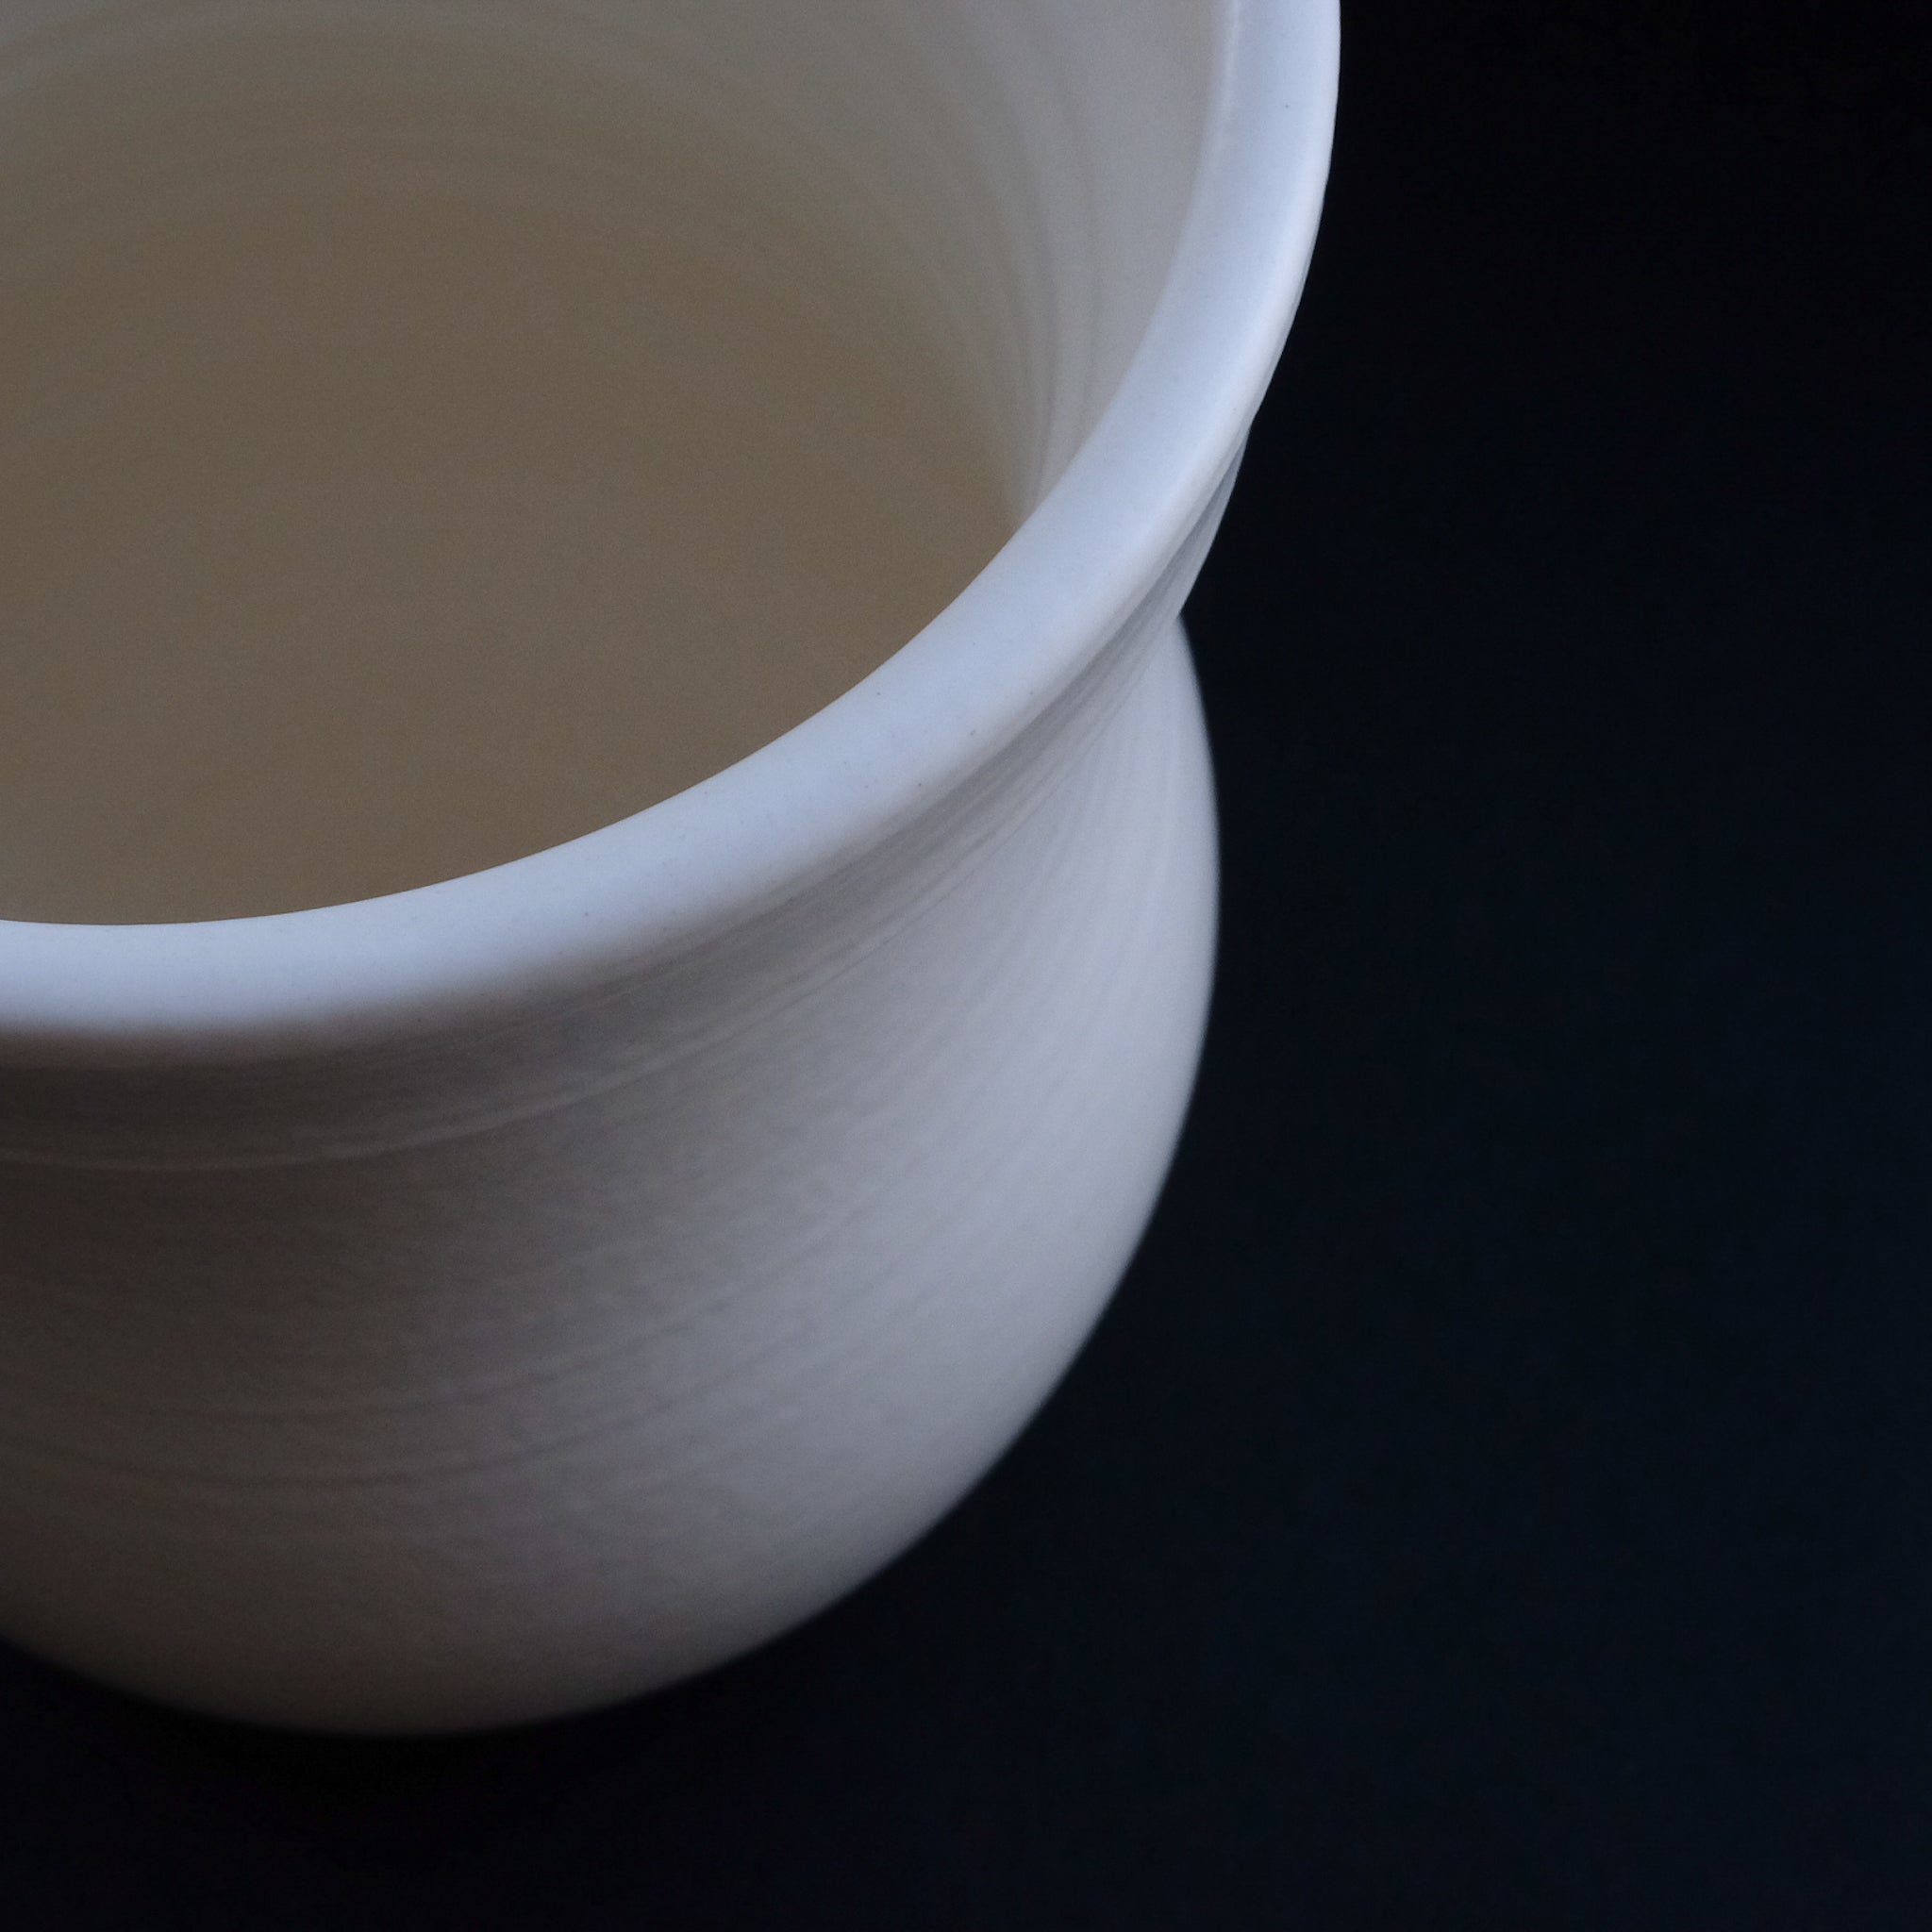 大谷製陶所 ( 大谷哲也 ) ライスクッカー 3合   Otani Pottery Studio ( Tetsuya Otani )  Rice cooker M-size